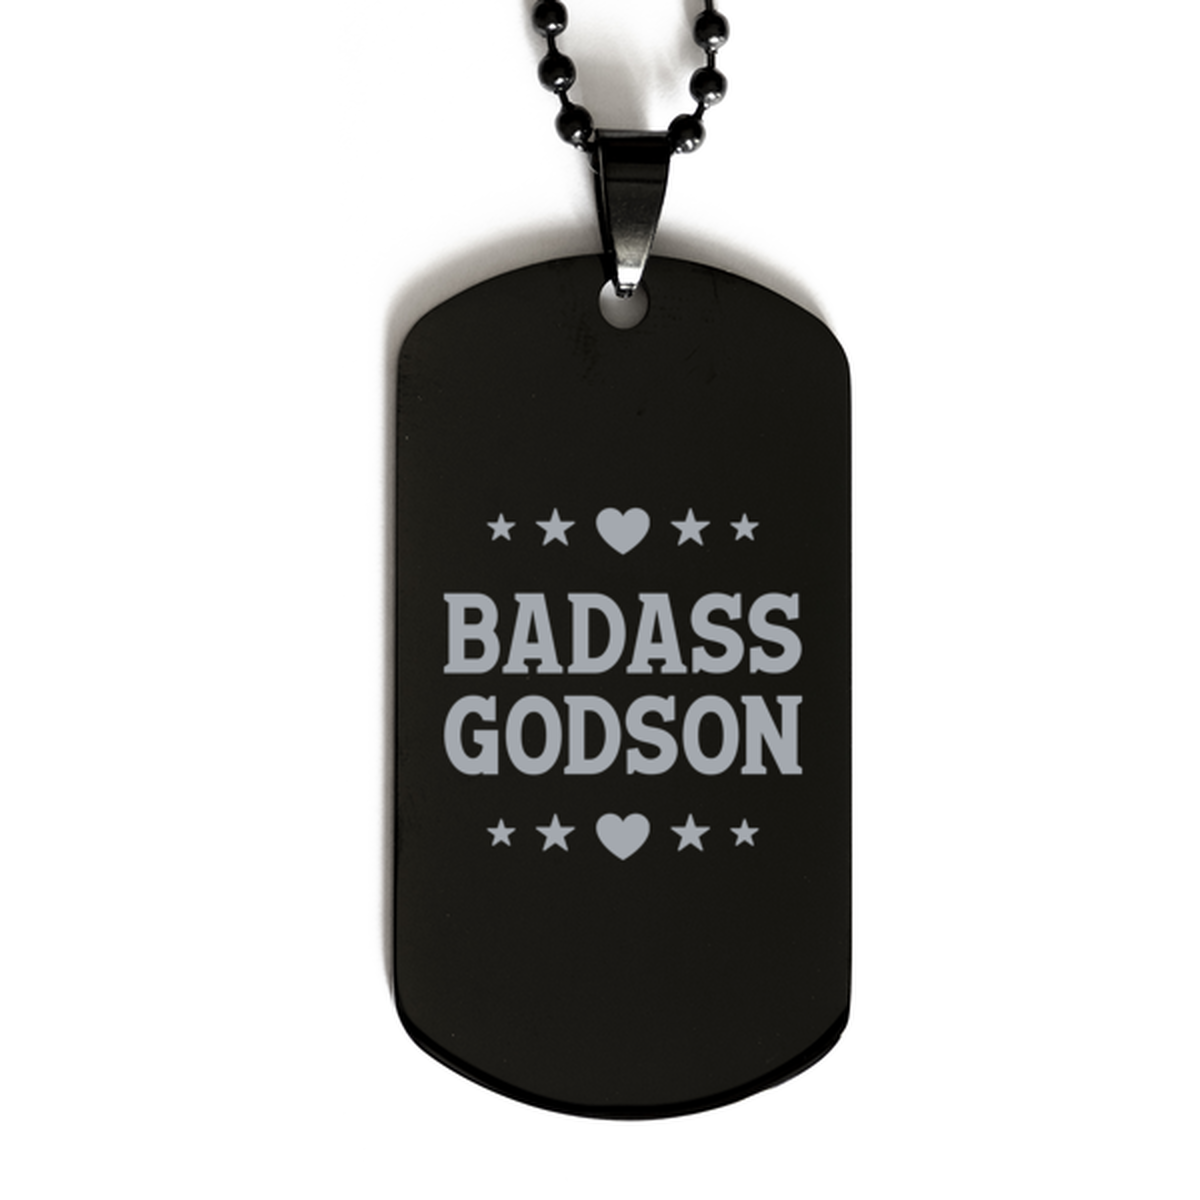 Godson Black Dog Tag, Badass Godson, Funny Family Gifts  Necklace For Godson From Godparent